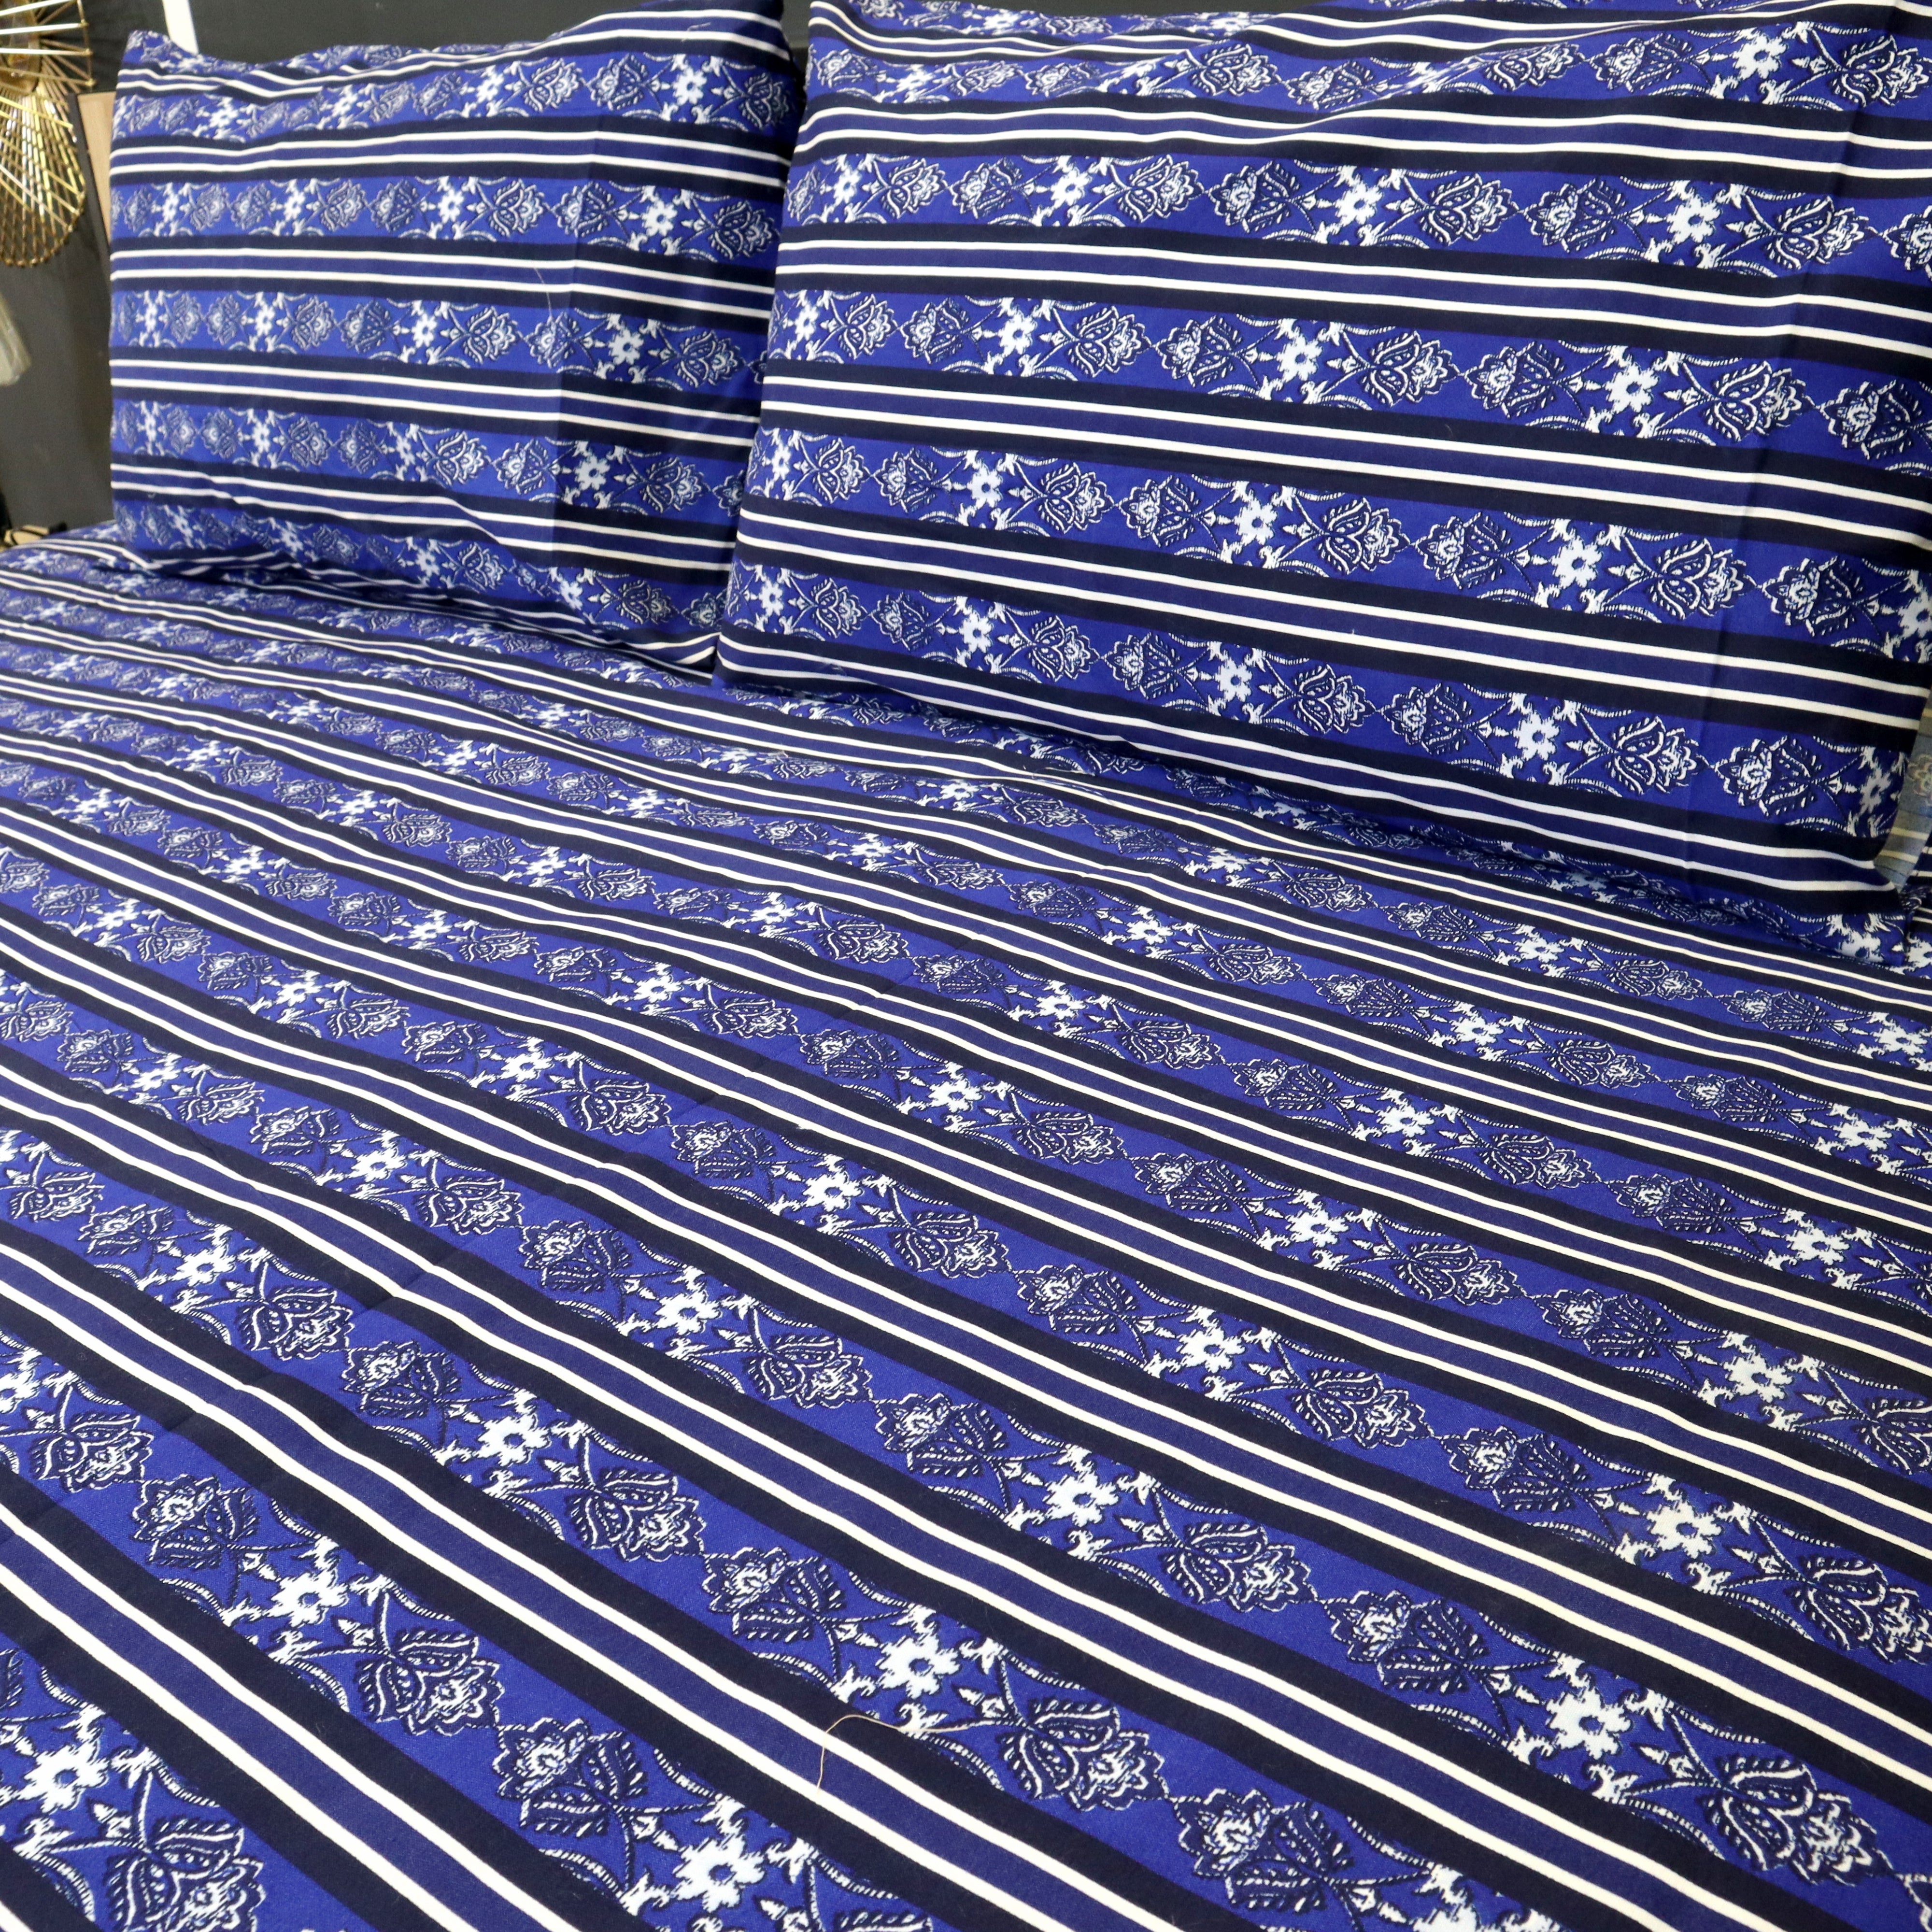 Bed Sheet Fantasy King Bed-Navy Nights